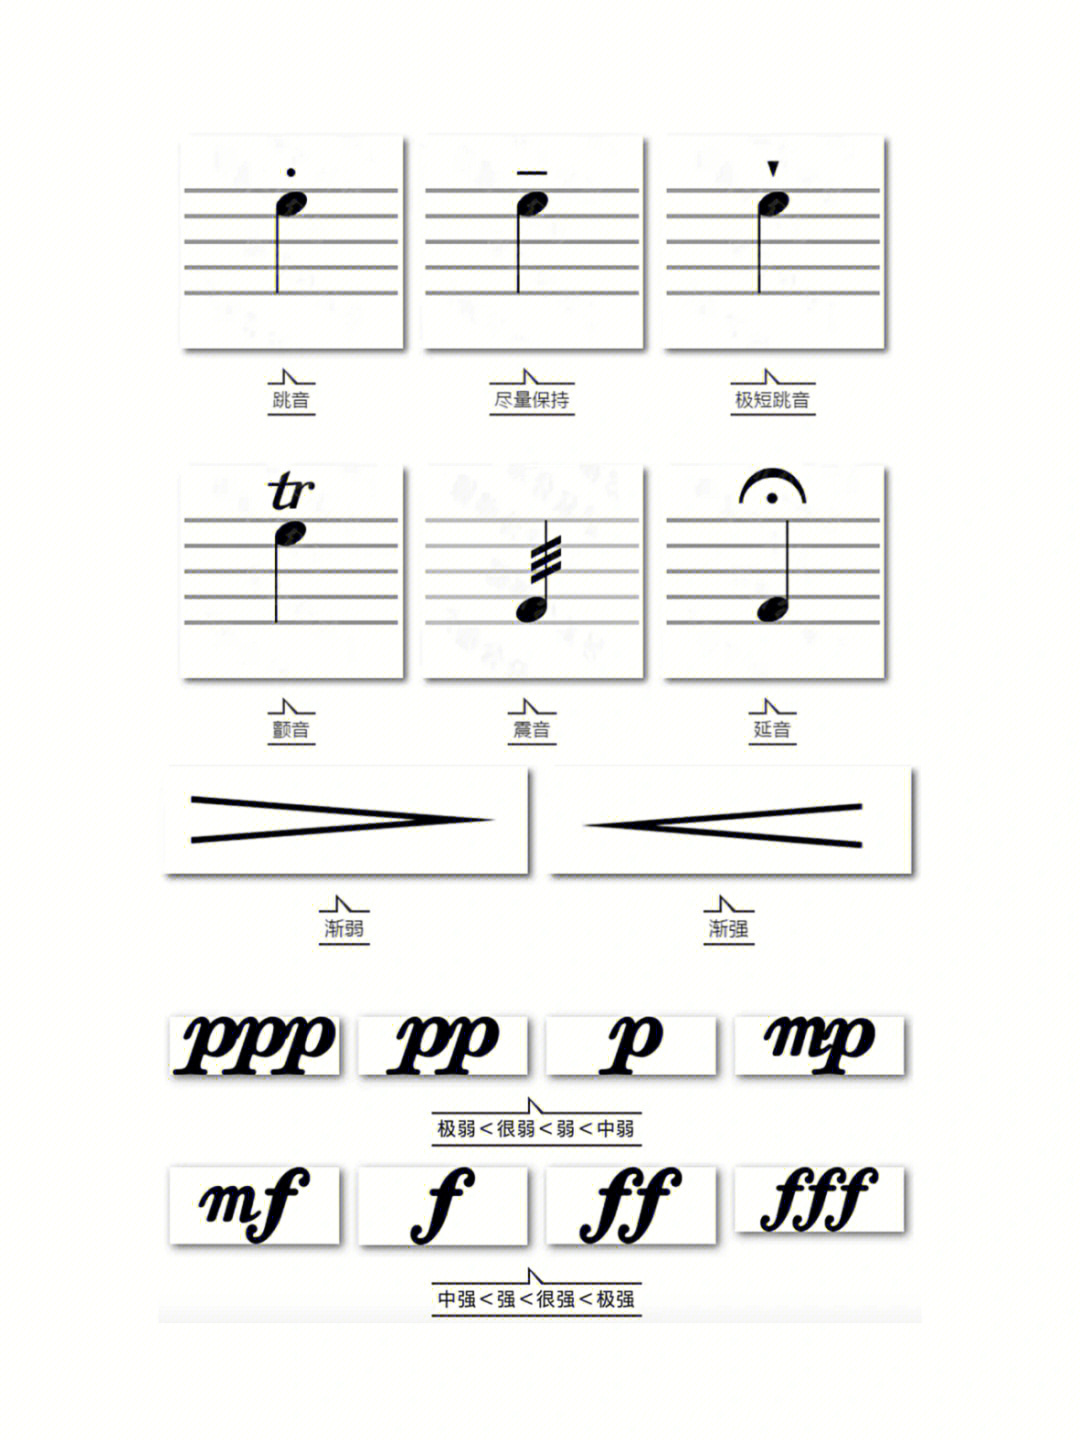 96音乐记号,指乐谱中表示感情,速度,演奏技法等信息的特定符号,它